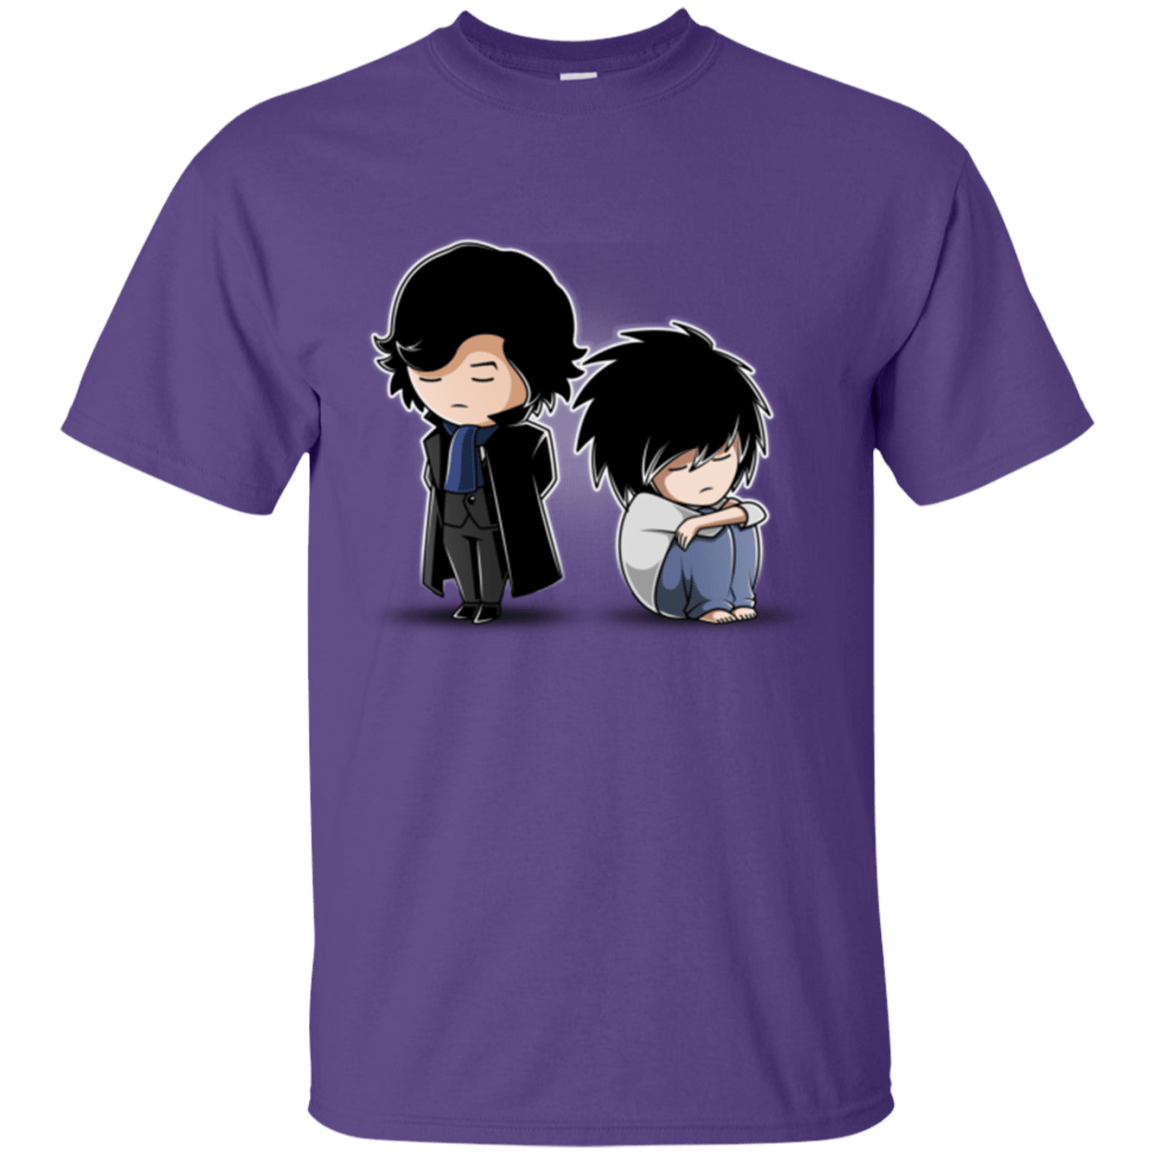 T-Shirts Purple / Small SherLock2 T-Shirt